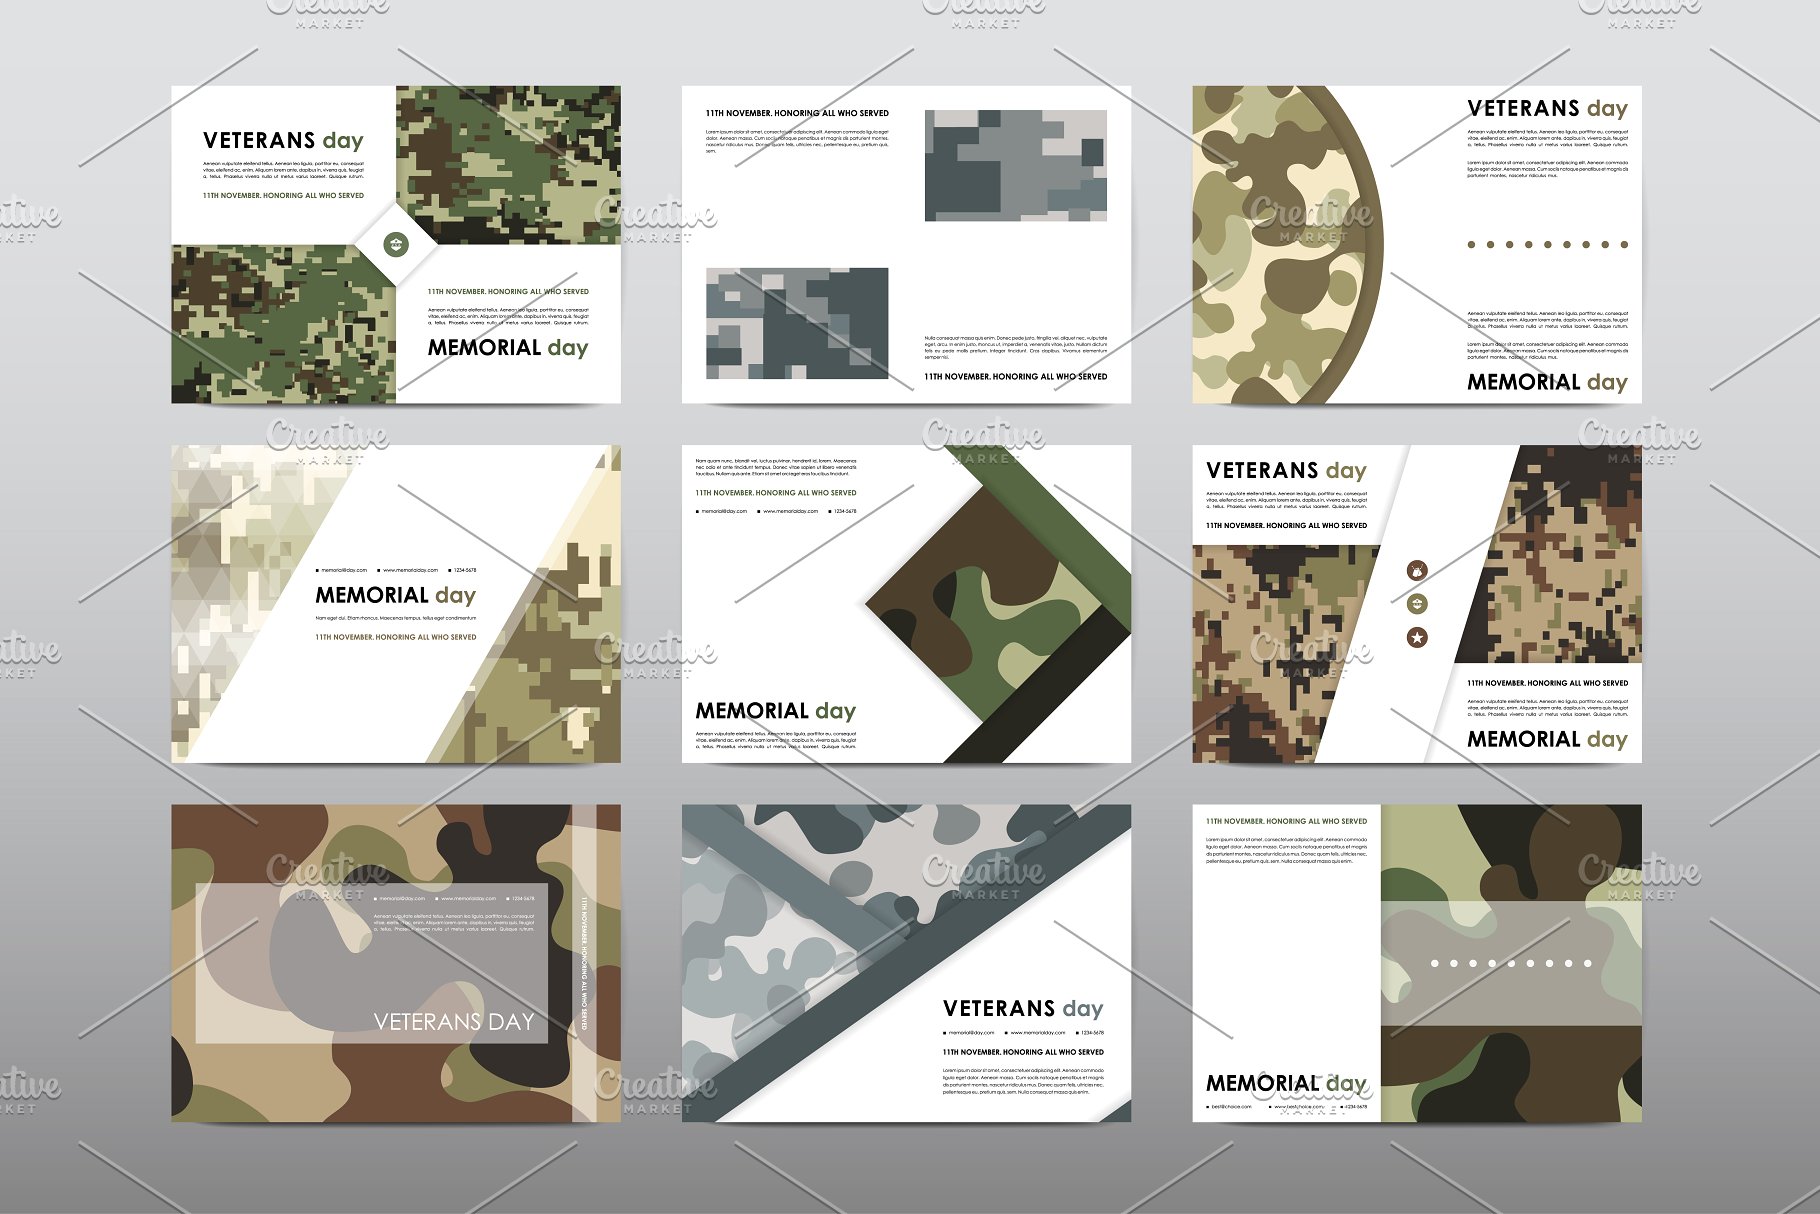 40+老兵节军人宣传小册模板 Veteran’s Day Brochures Bundle插图(1)